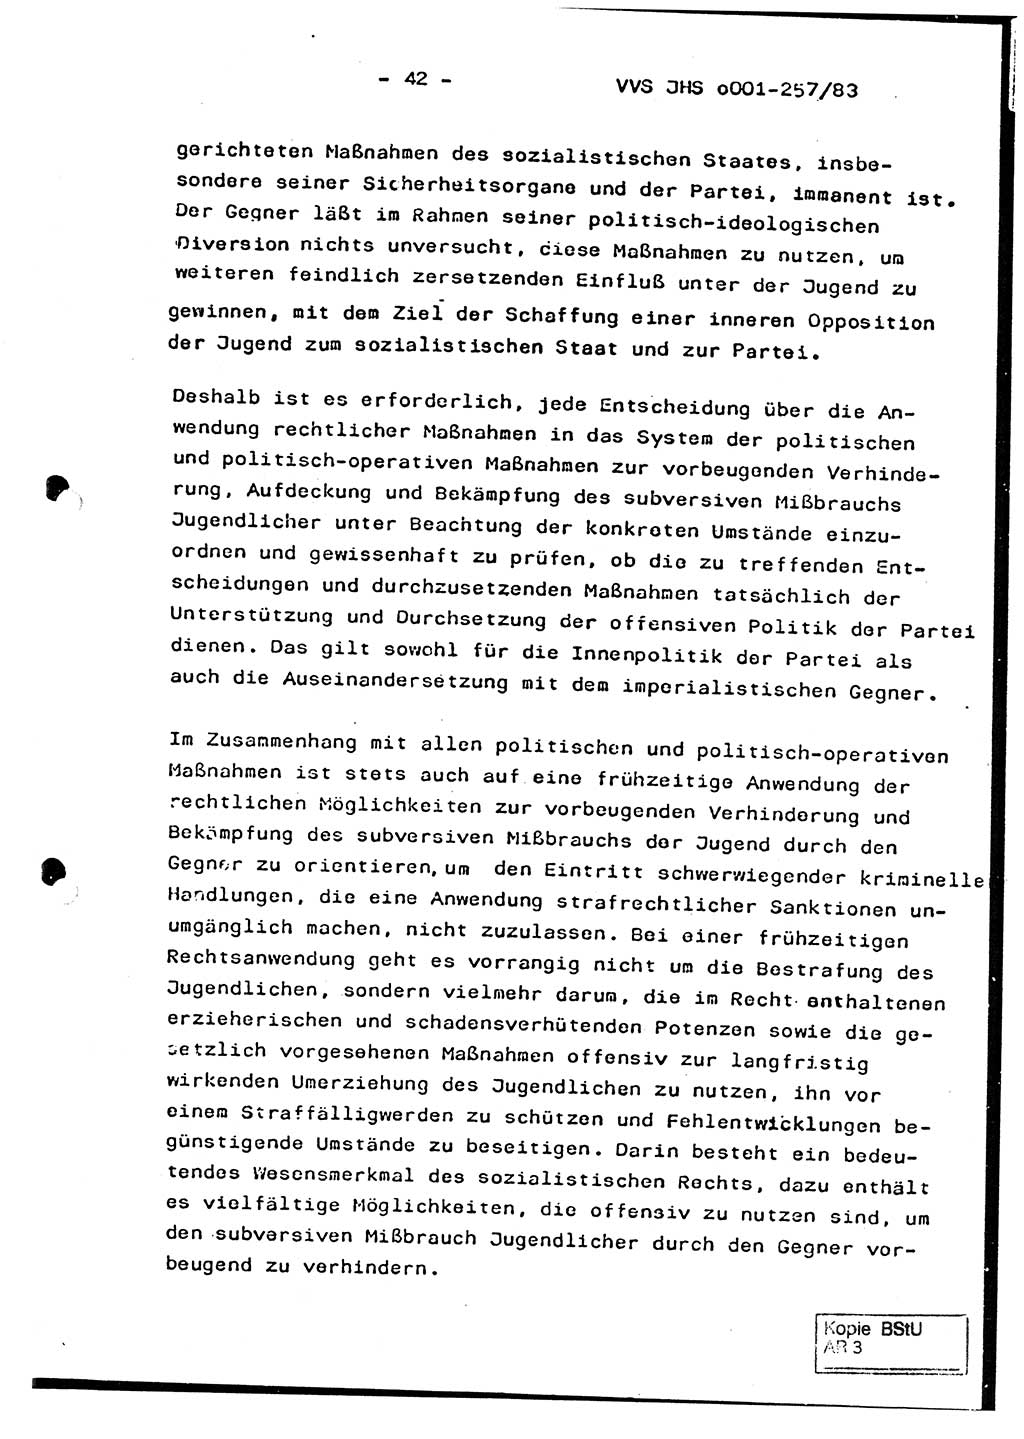 Dissertation, Oberst Helmut Lubas (BV Mdg.), Oberstleutnant Manfred Eschberger (HA IX), Oberleutnant Hans-Jürgen Ludwig (JHS), Ministerium für Staatssicherheit (MfS) [Deutsche Demokratische Republik (DDR)], Juristische Hochschule (JHS), Vertrauliche Verschlußsache (VVS) o001-257/83, Potsdam 1983, Seite 42 (Diss. MfS DDR JHS VVS o001-257/83 1983, S. 42)